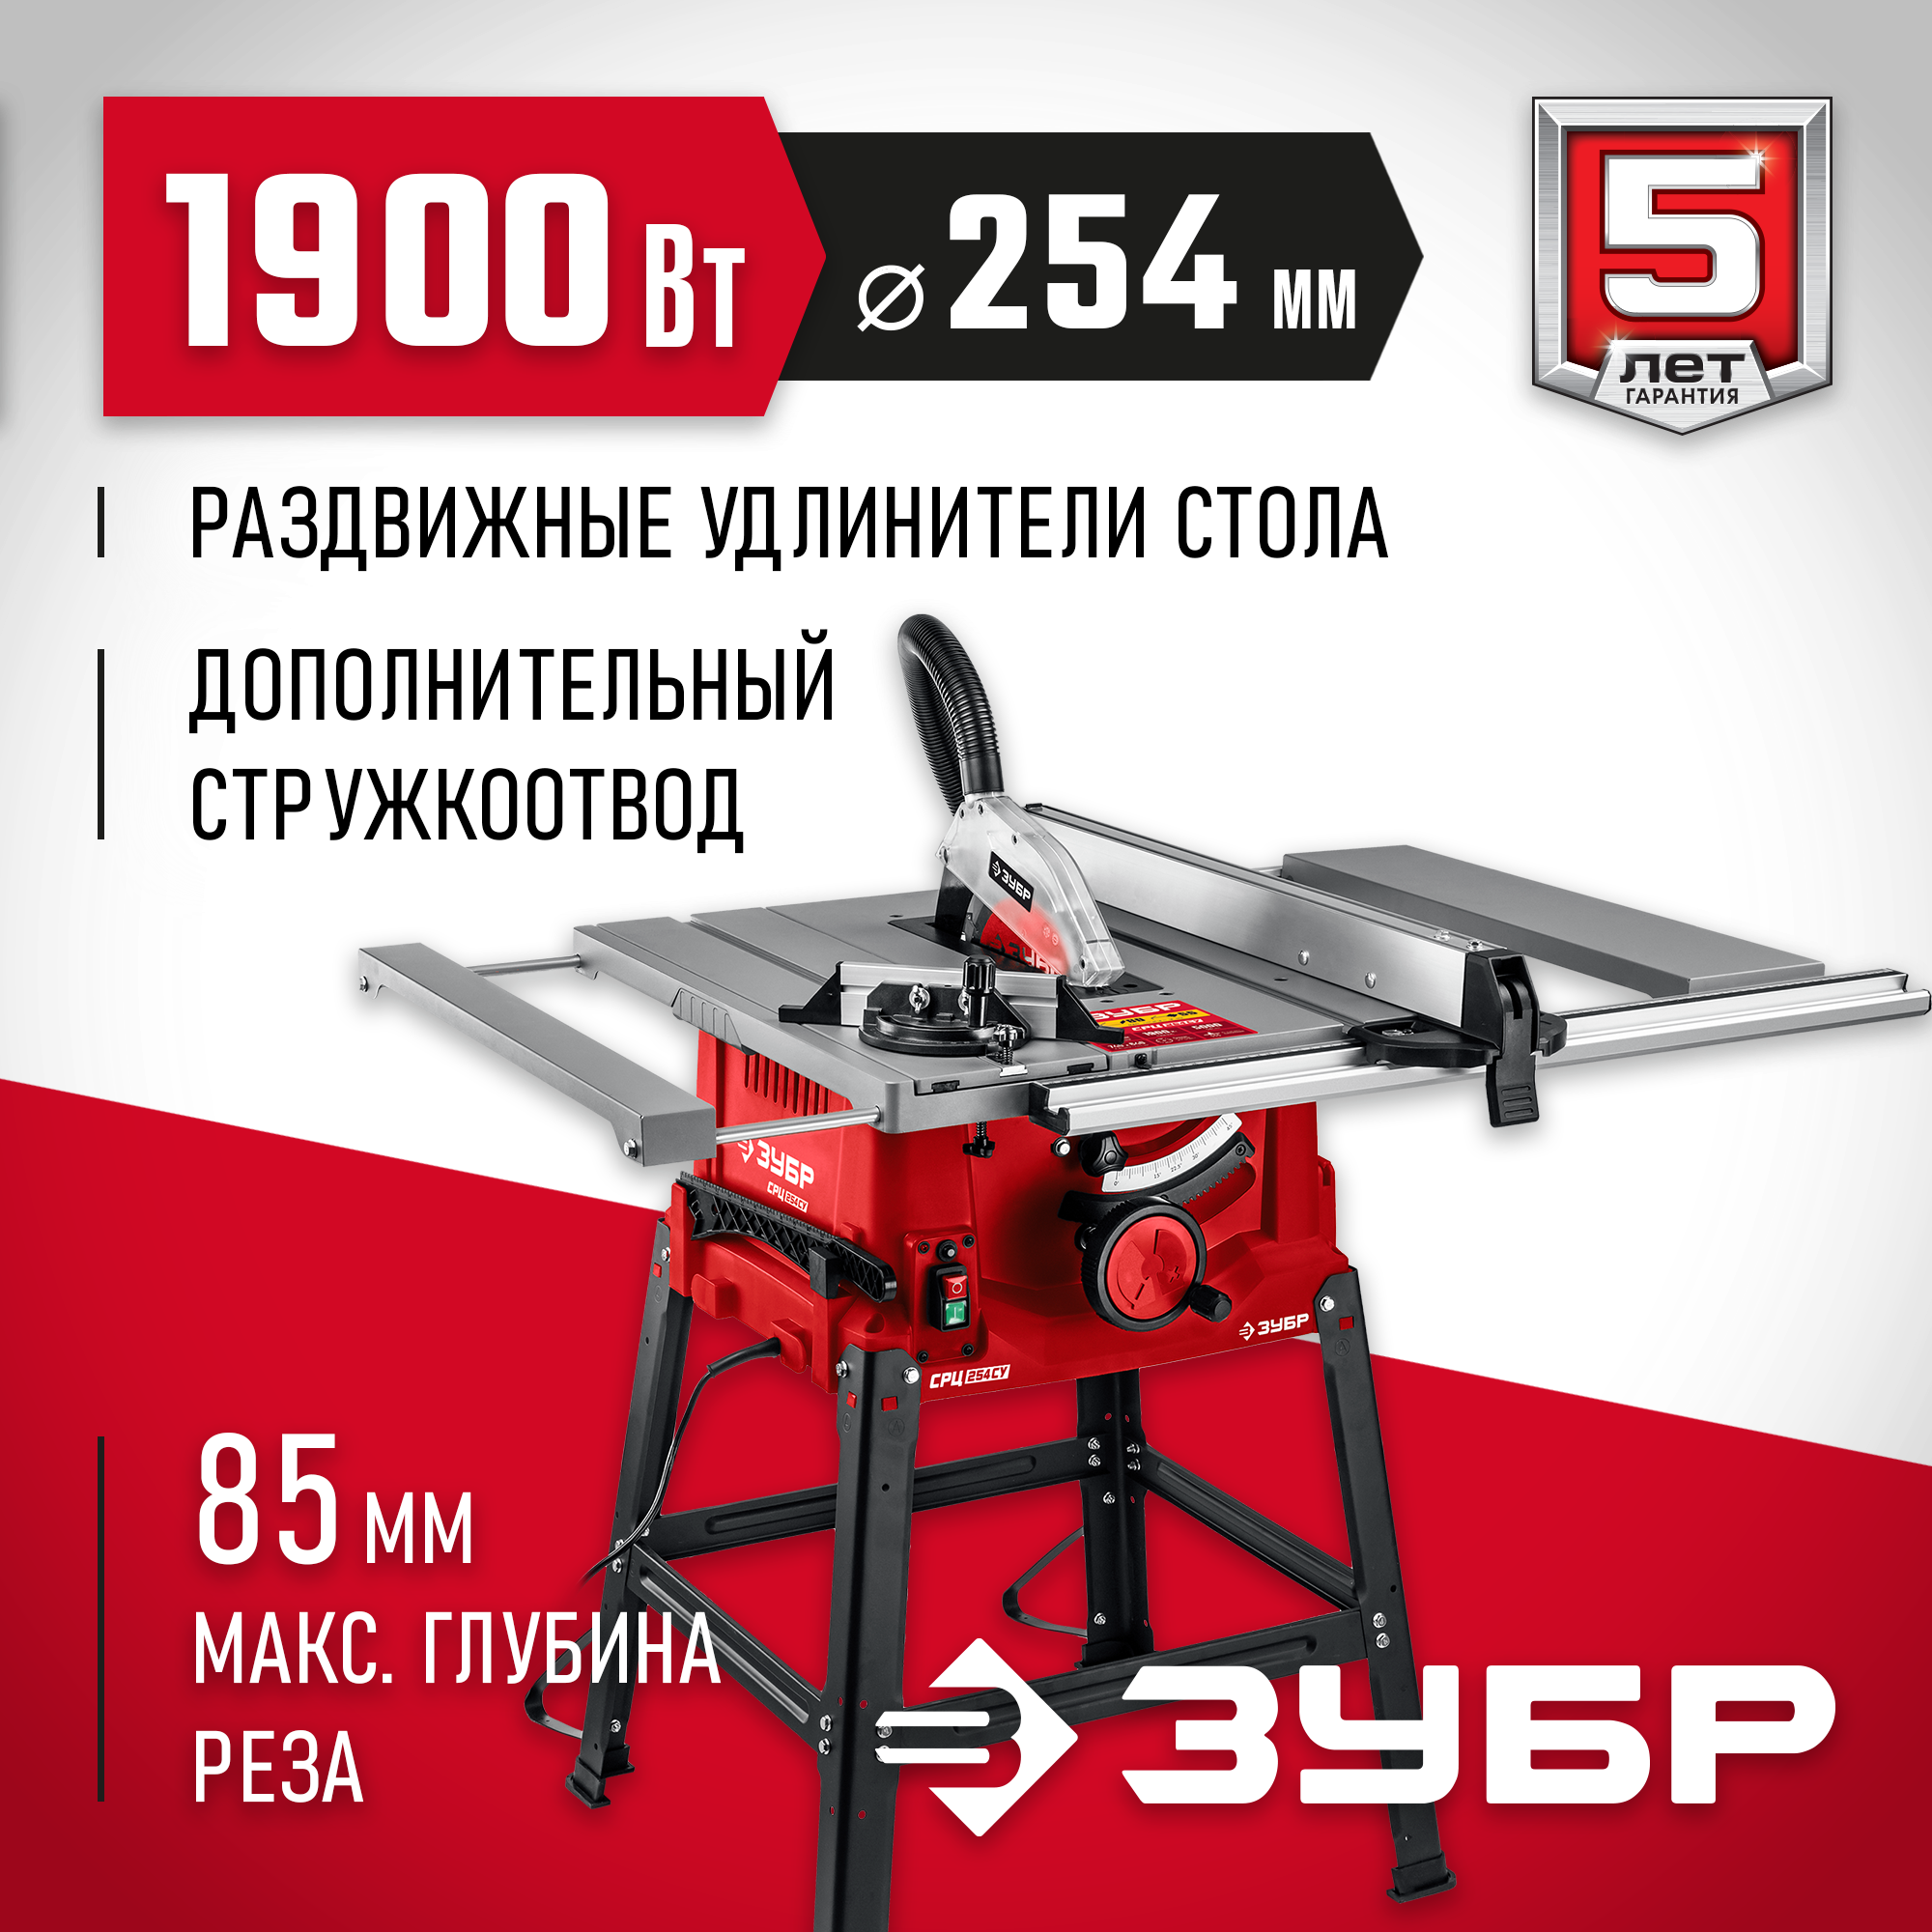 Распиловочный станок ЗУБР СРЦ-254су, 1900 Вт — купить в интернет-магазине по низкой цене на Яндекс Маркете